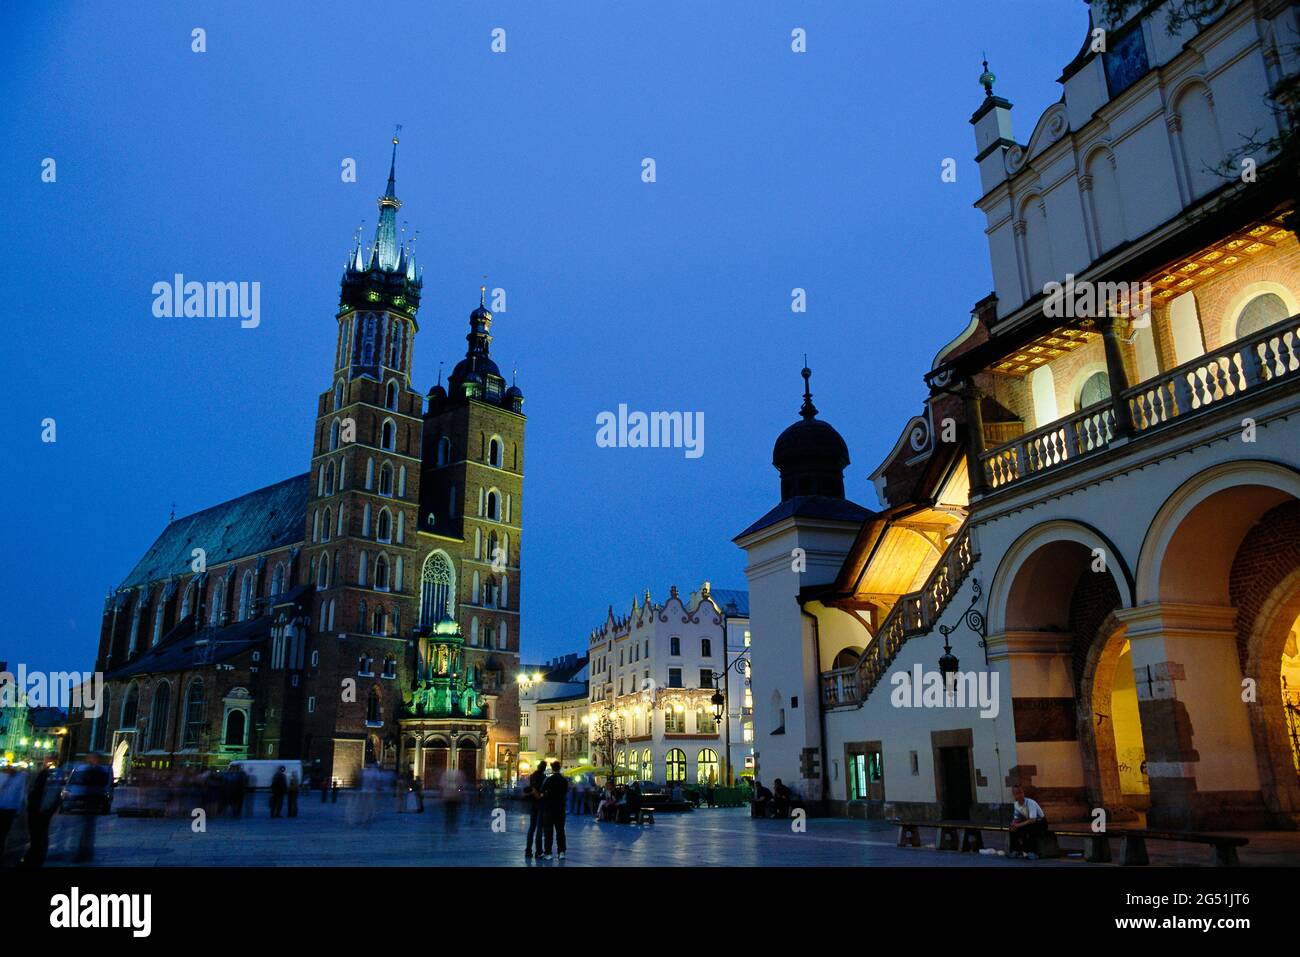 Saint Mary Church and main market square at night, Krakow, Poland Stock Photo